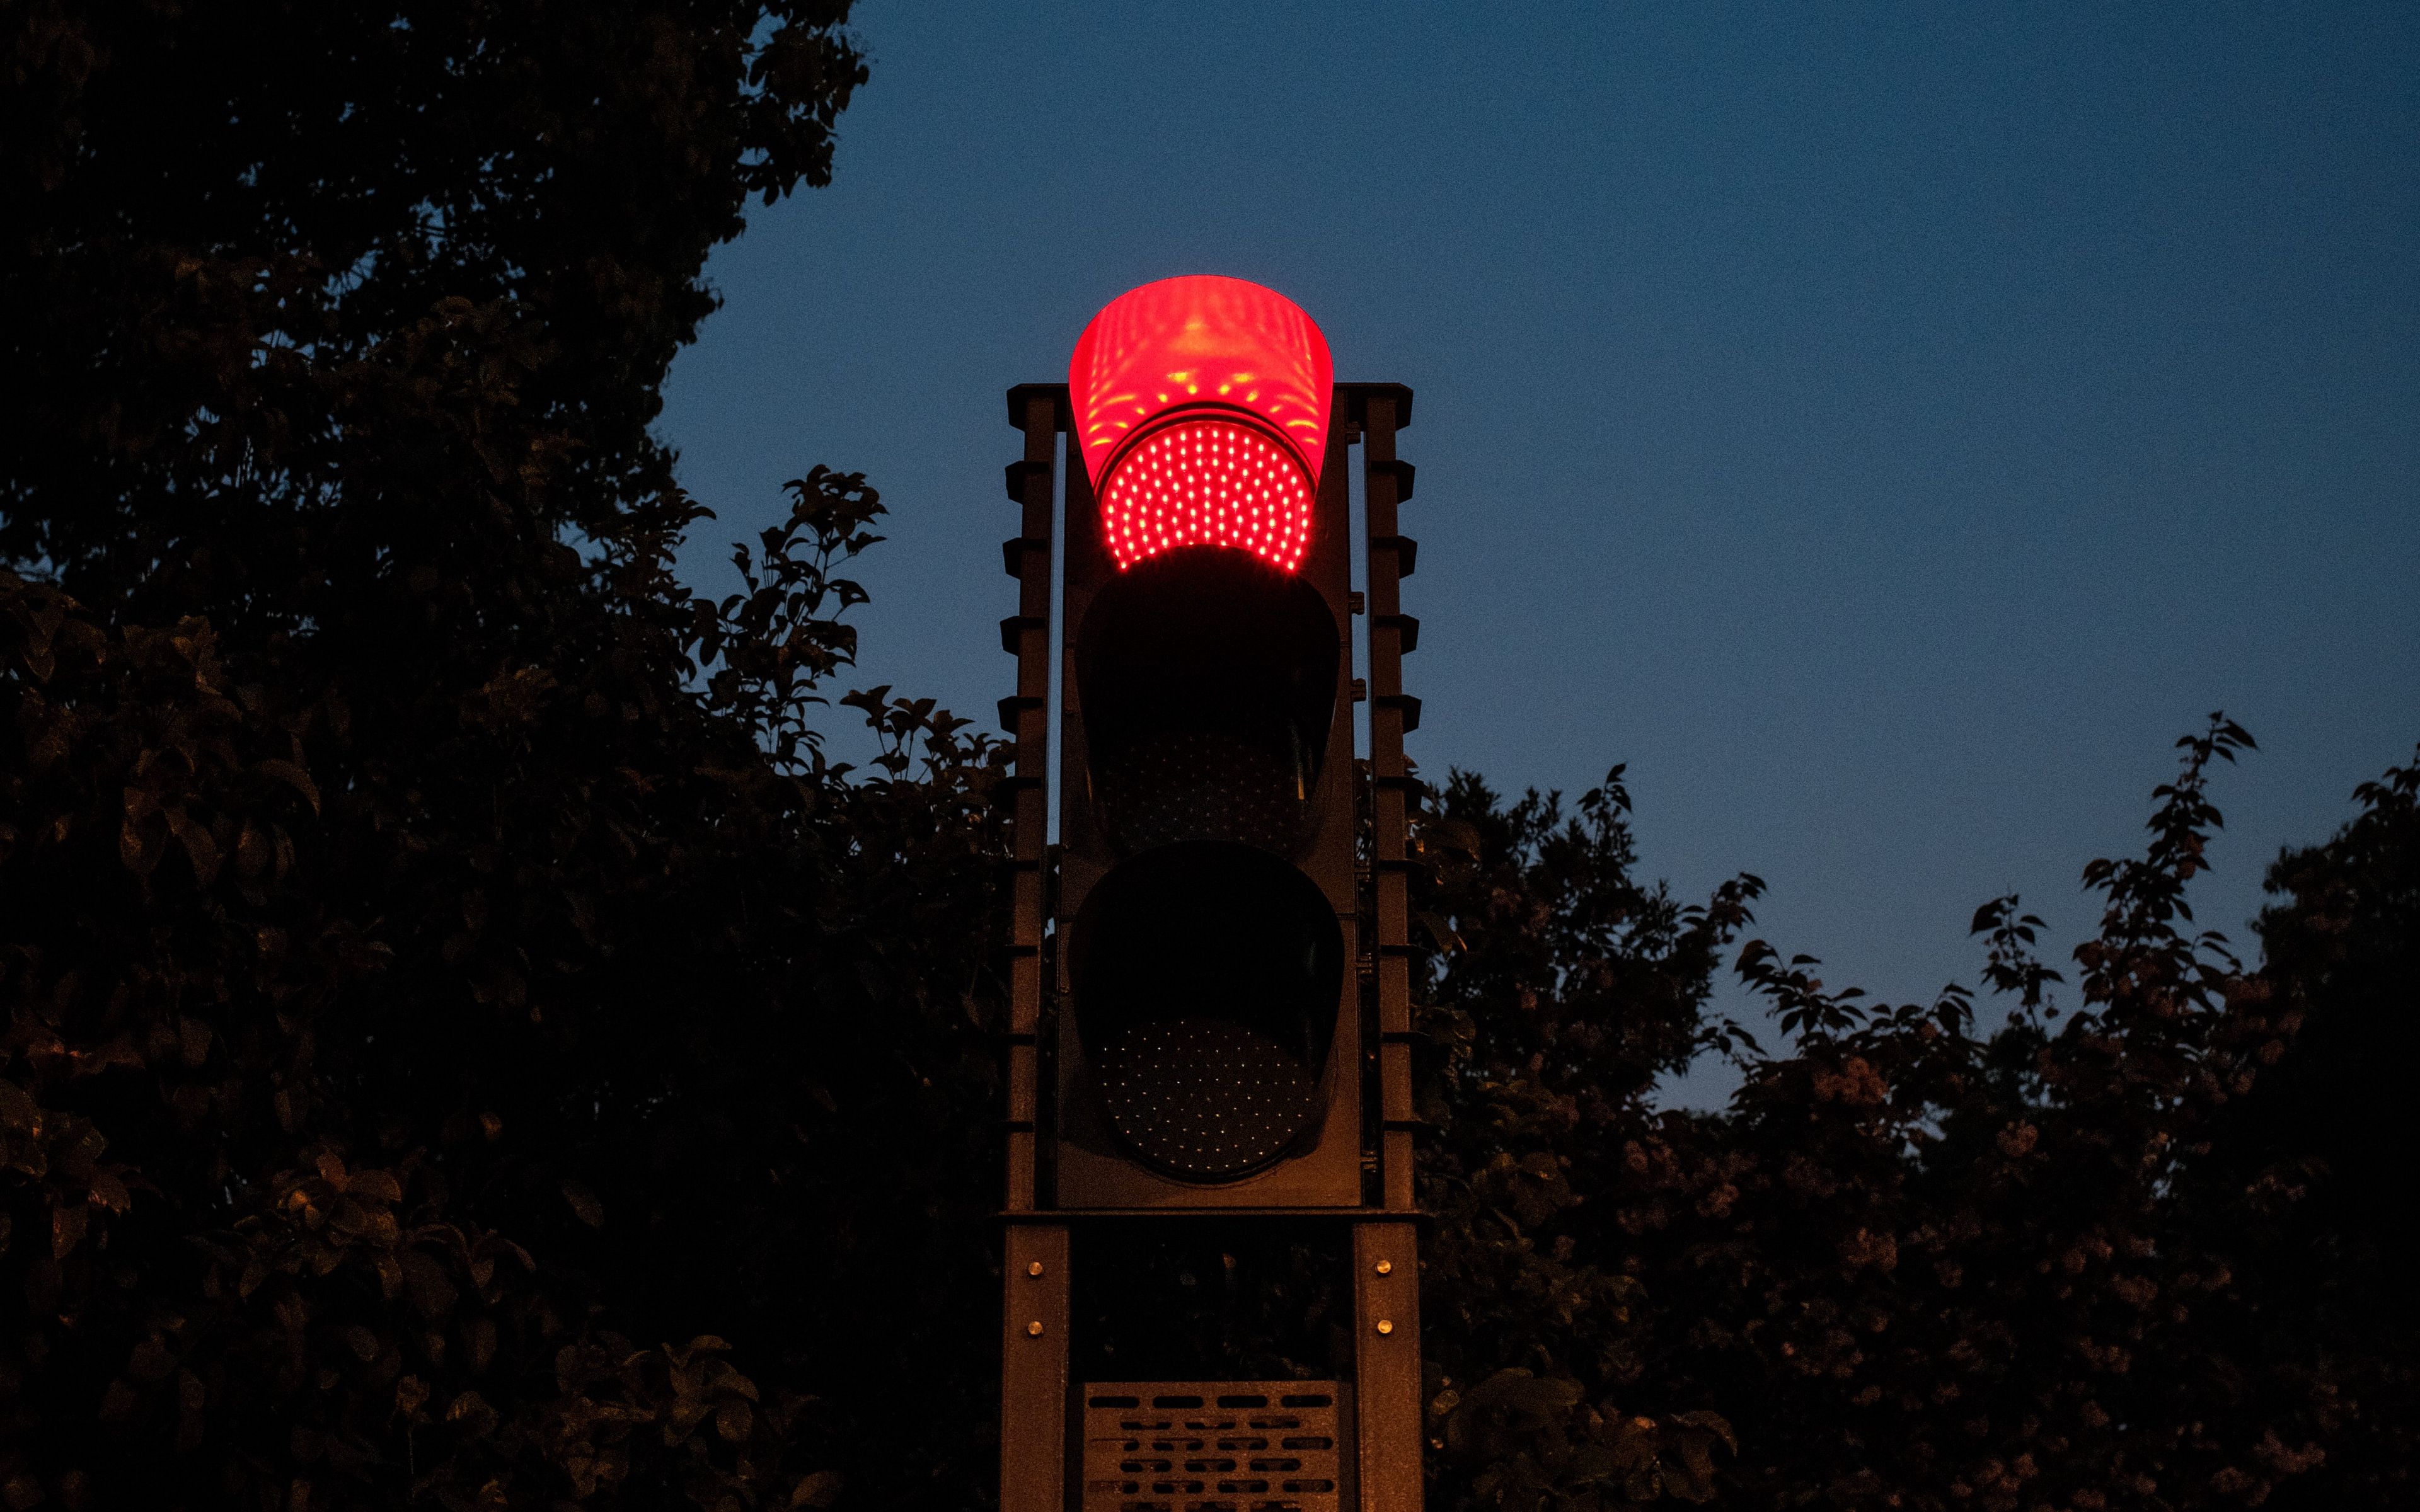 Вечер 4 3 24. Светофор на столбе. Красный свет. Космический светофор.